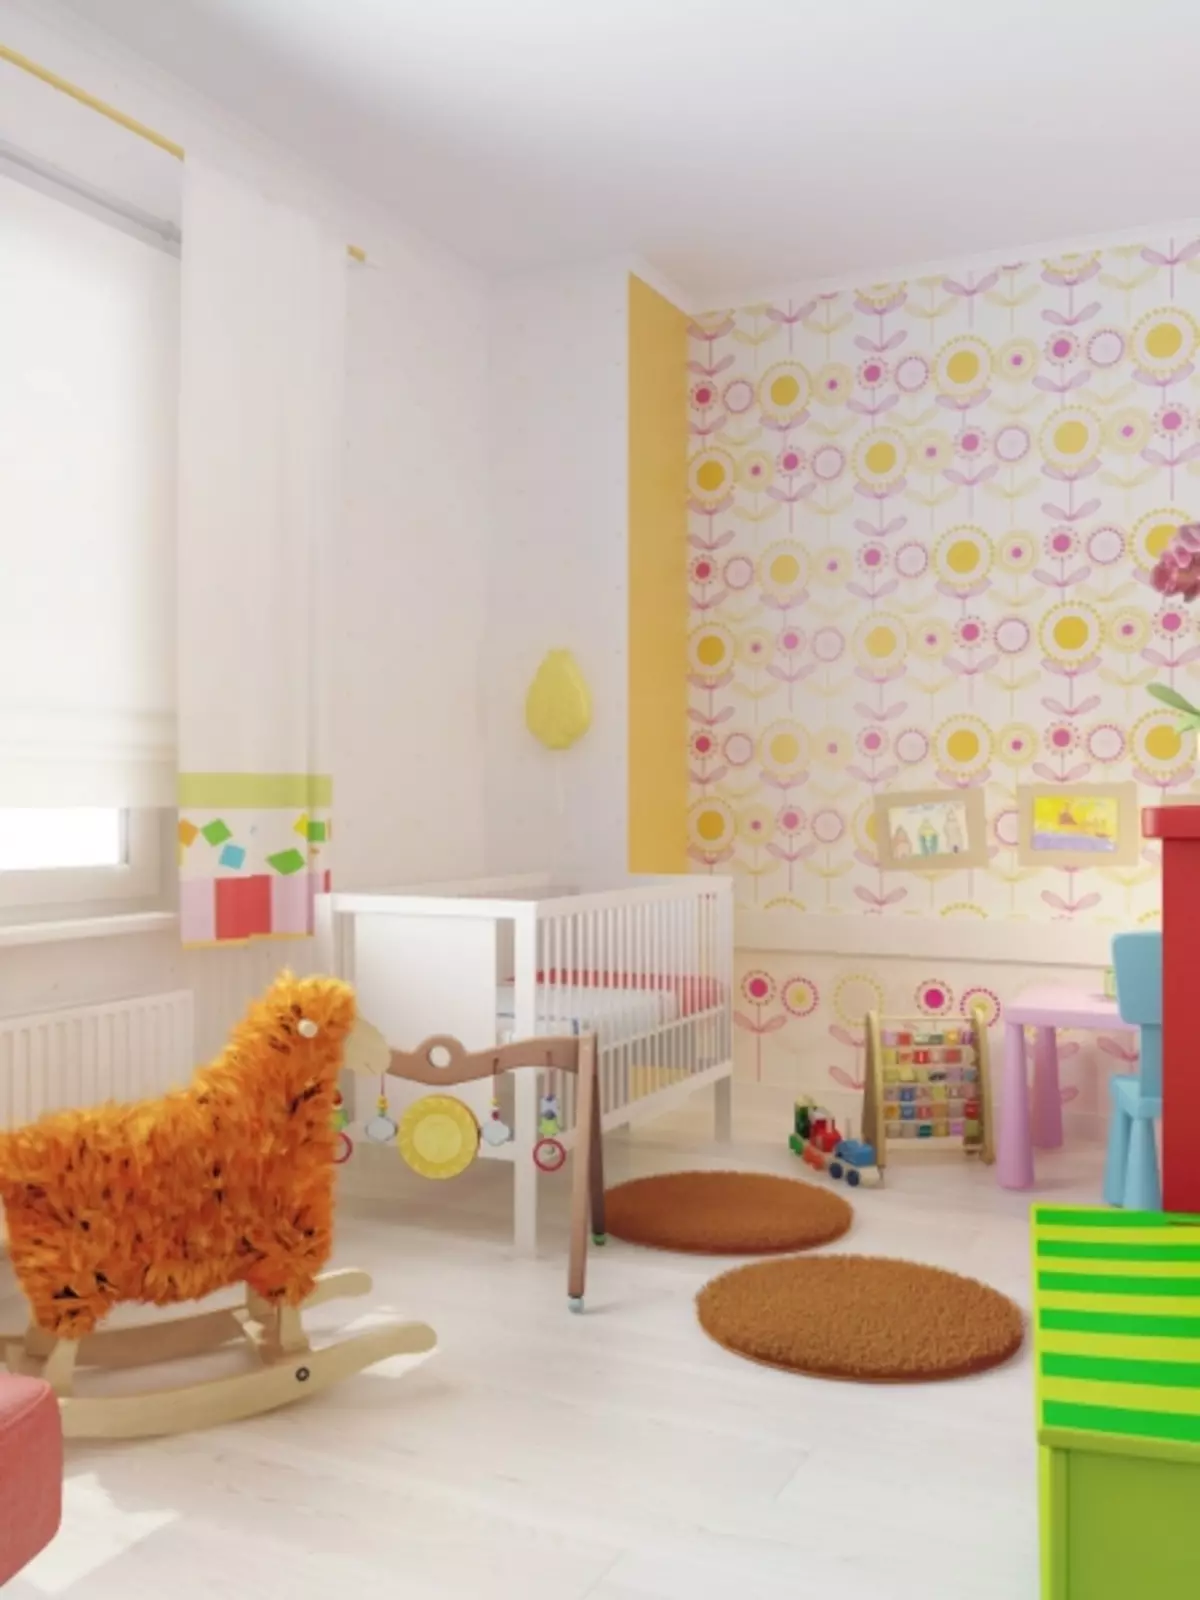 3-bedroom apartment design para sa isang pamilya na may dalawang anak